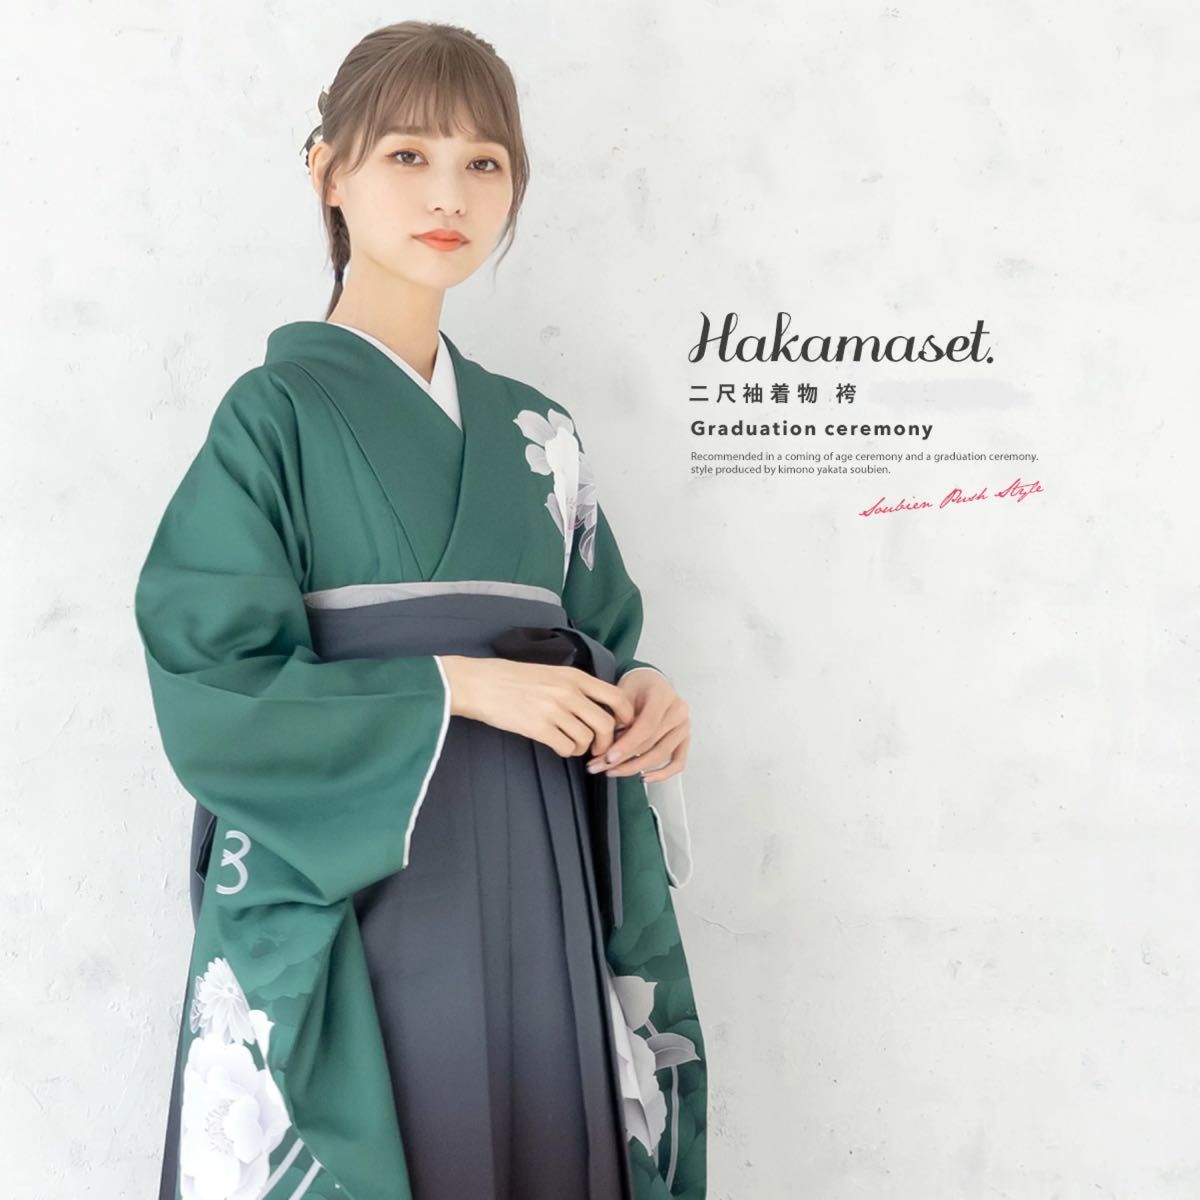 新作 卒業式袴 袴3点セット 牡丹 グリーン 緑 袴 二尺袖 ショート丈